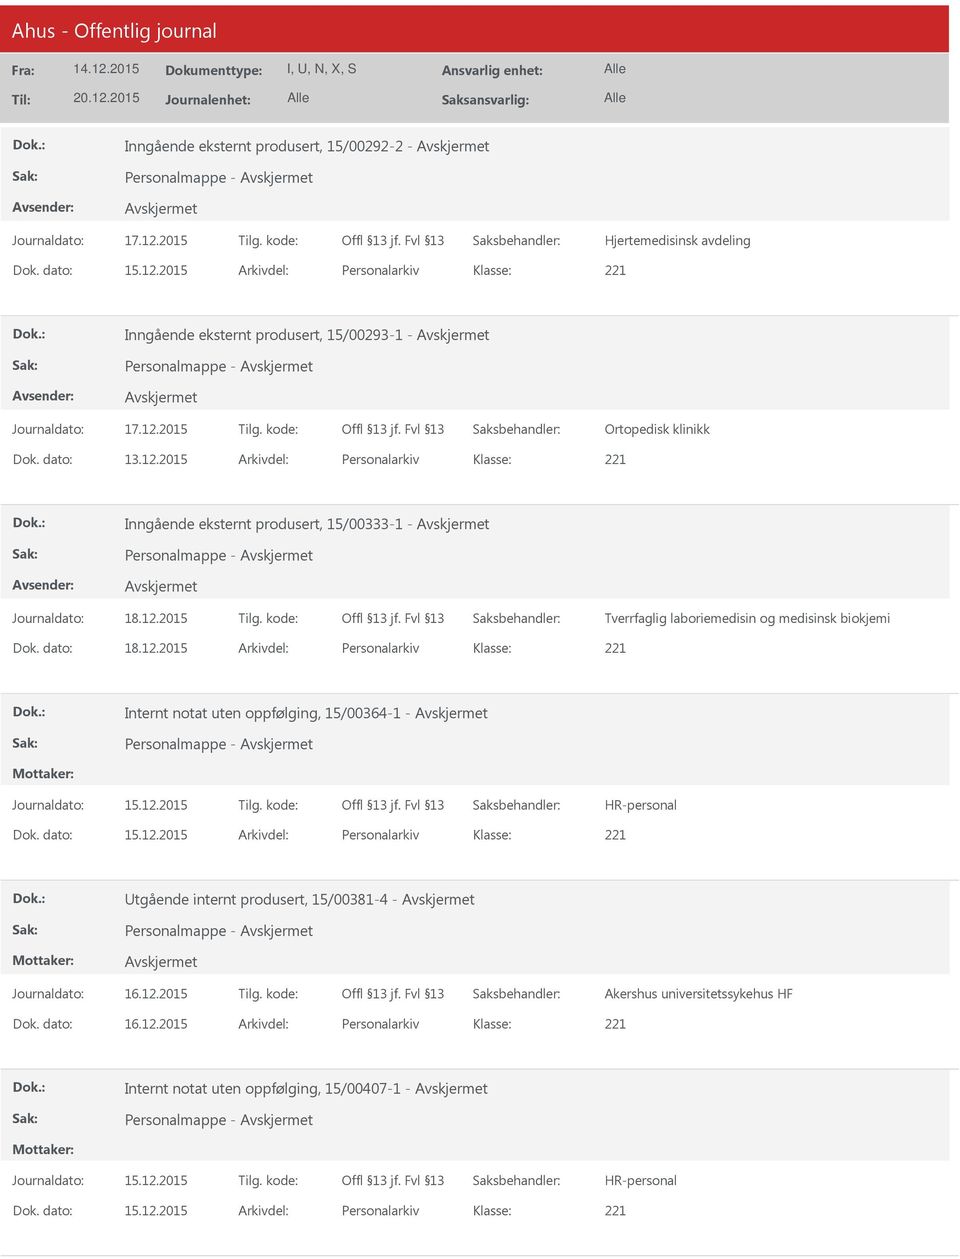 2015 Arkivdel: Personalarkiv Inngående eksternt produsert, 15/00333-1 - Tverrfaglig laboriemedisin og medisinsk biokjemi Dok. dato: 18.12.